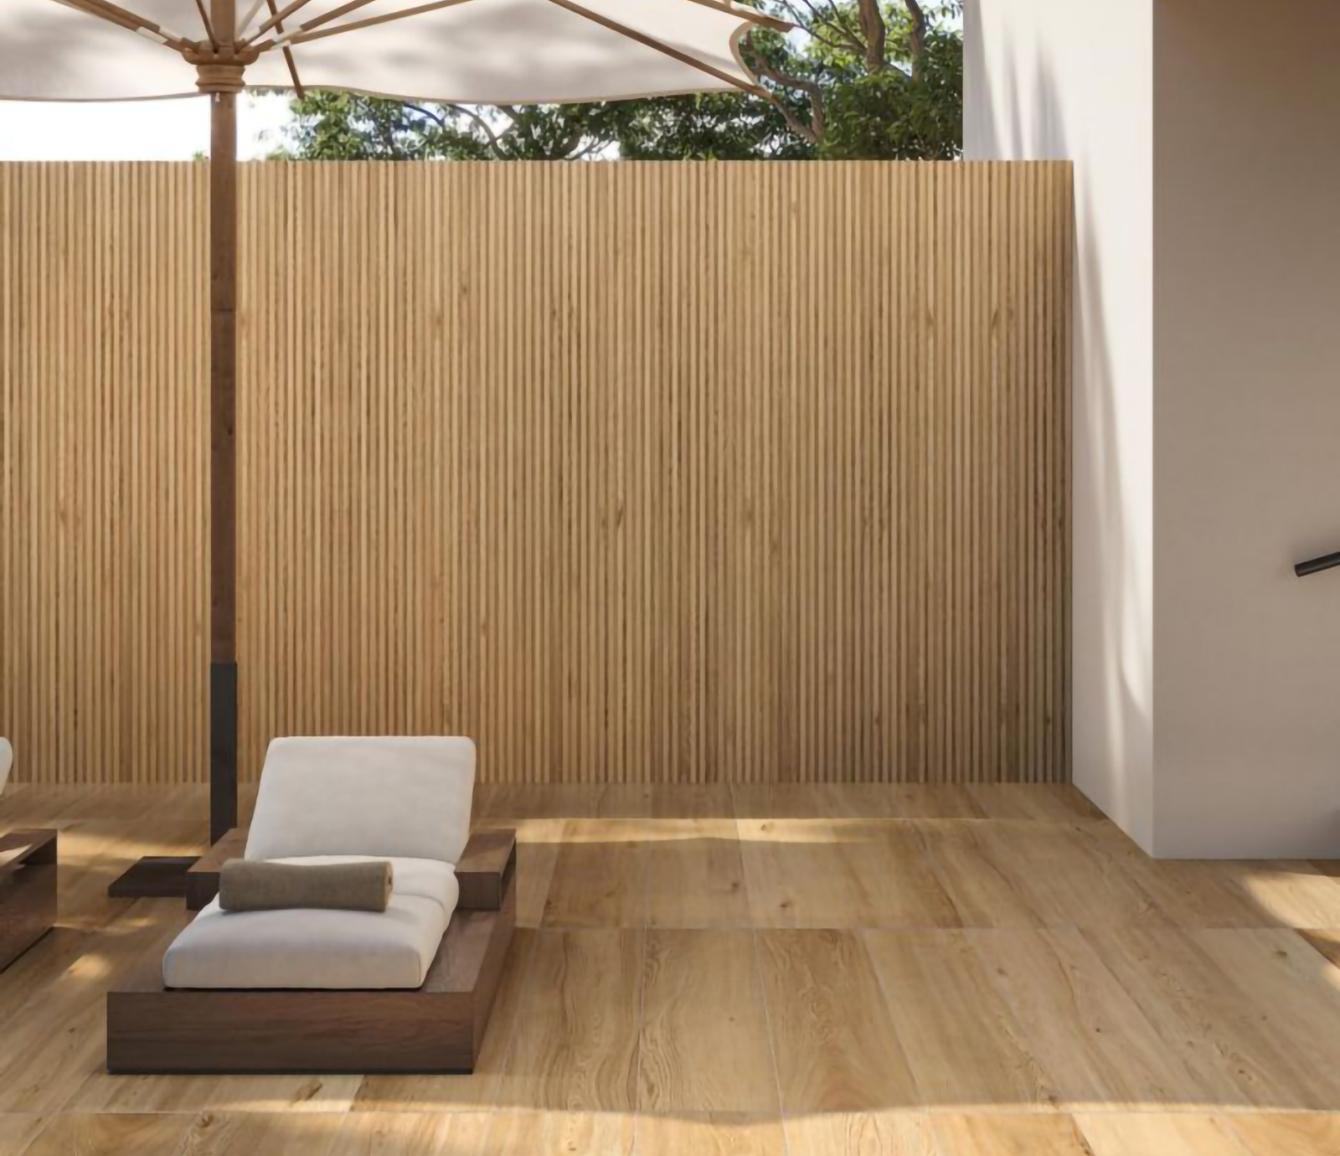 Sur cette terrasse, l'esprit bois se joue en duo avec un carrelage imitation parquet au sol et un carrelage imitation bois avec surface rainurée.